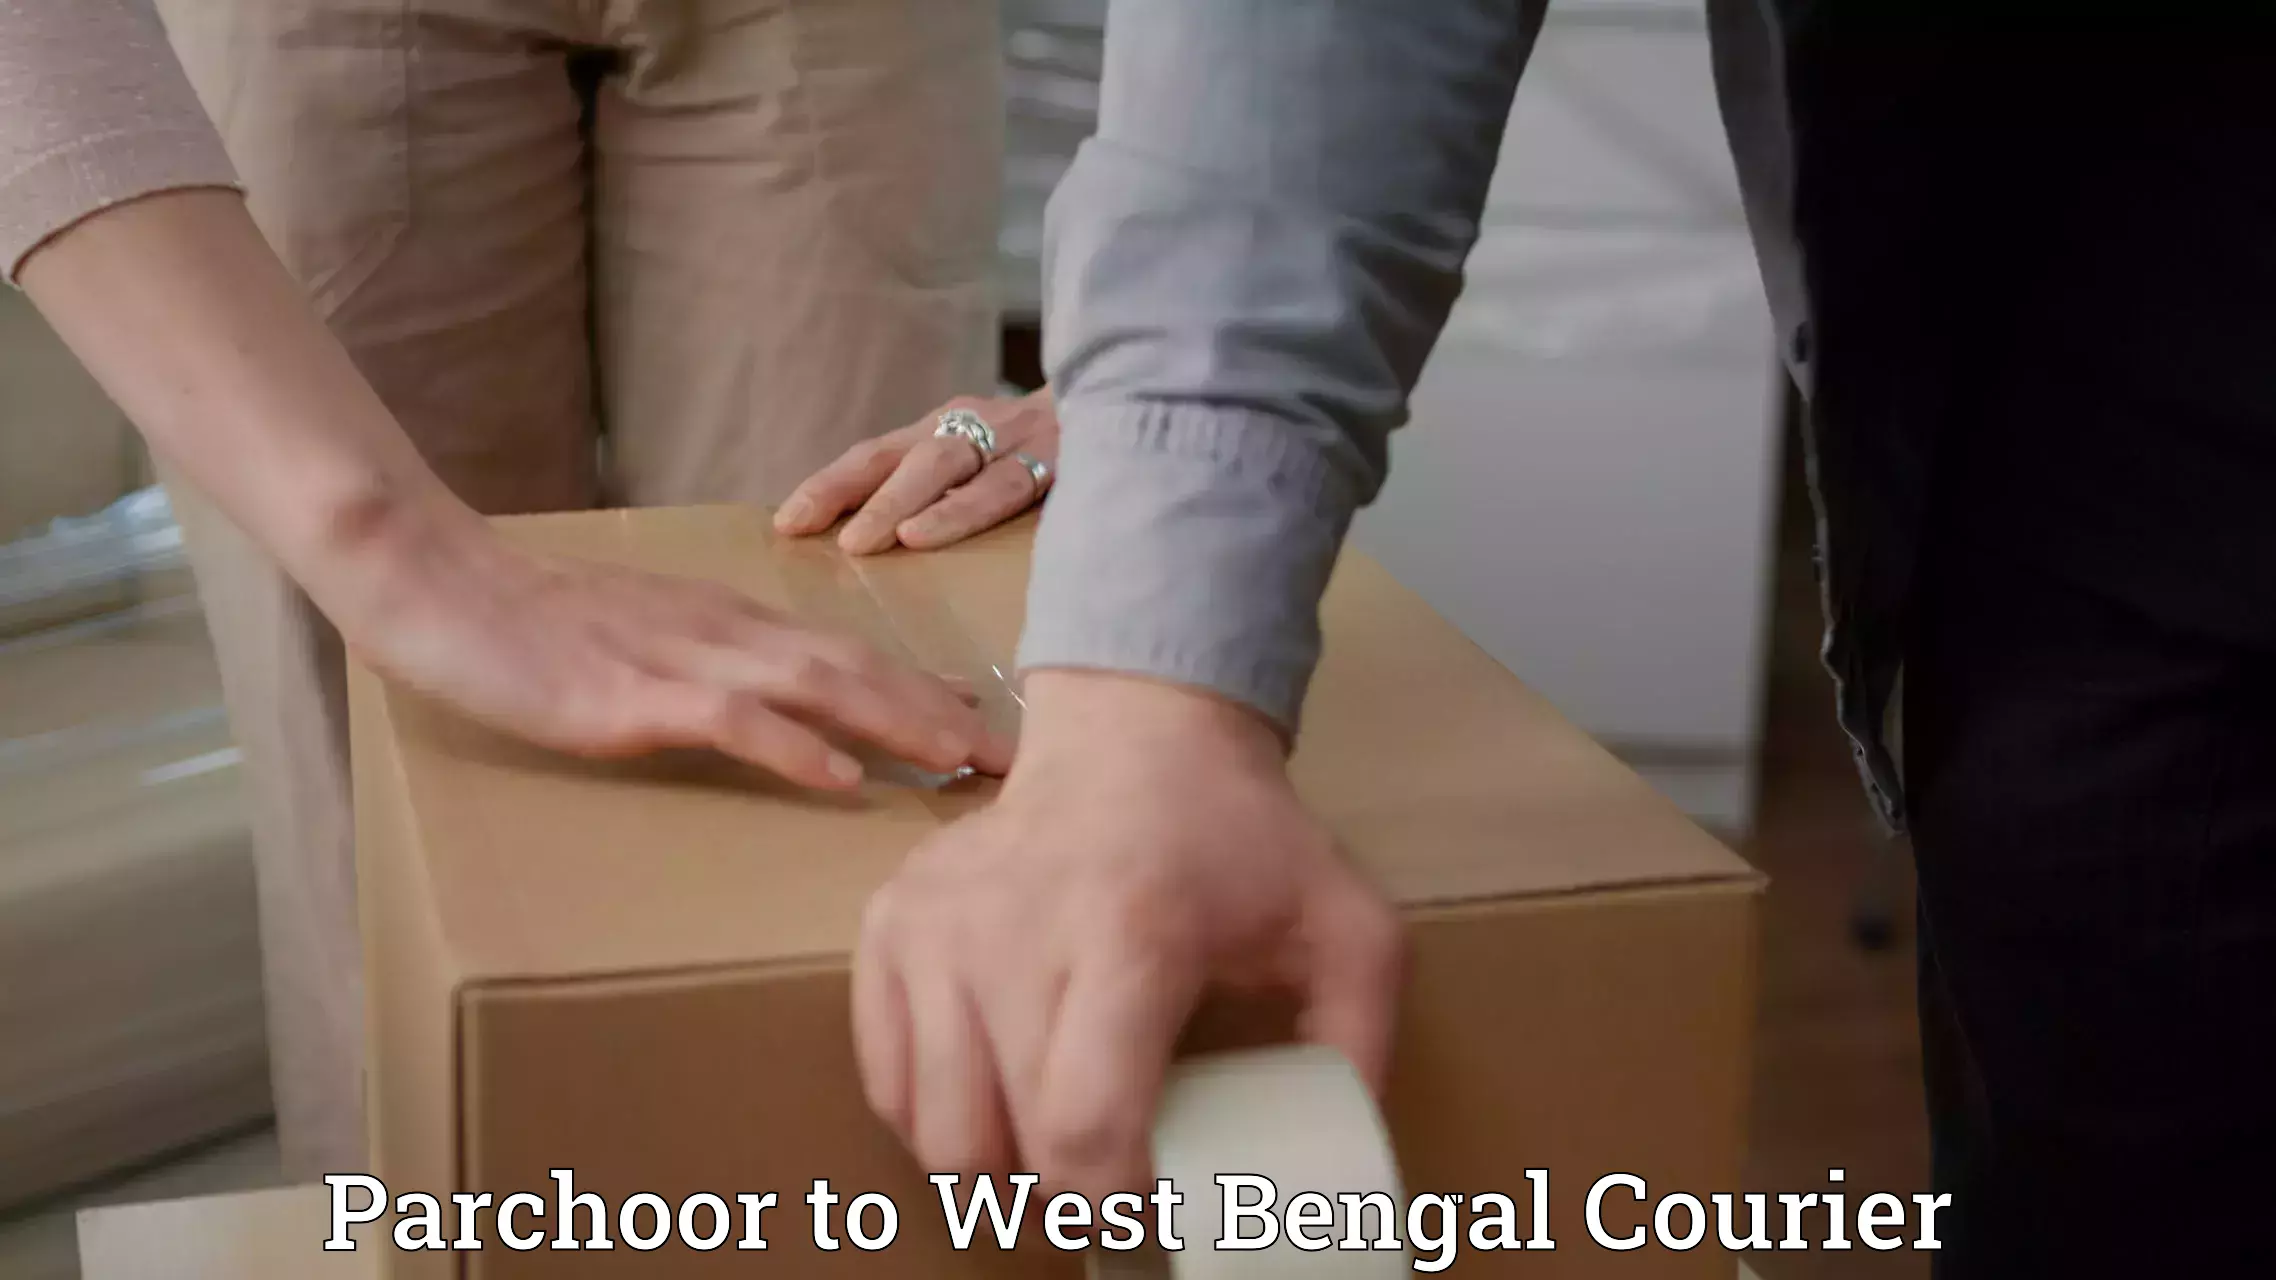 Affordable parcel service Parchoor to West Bengal